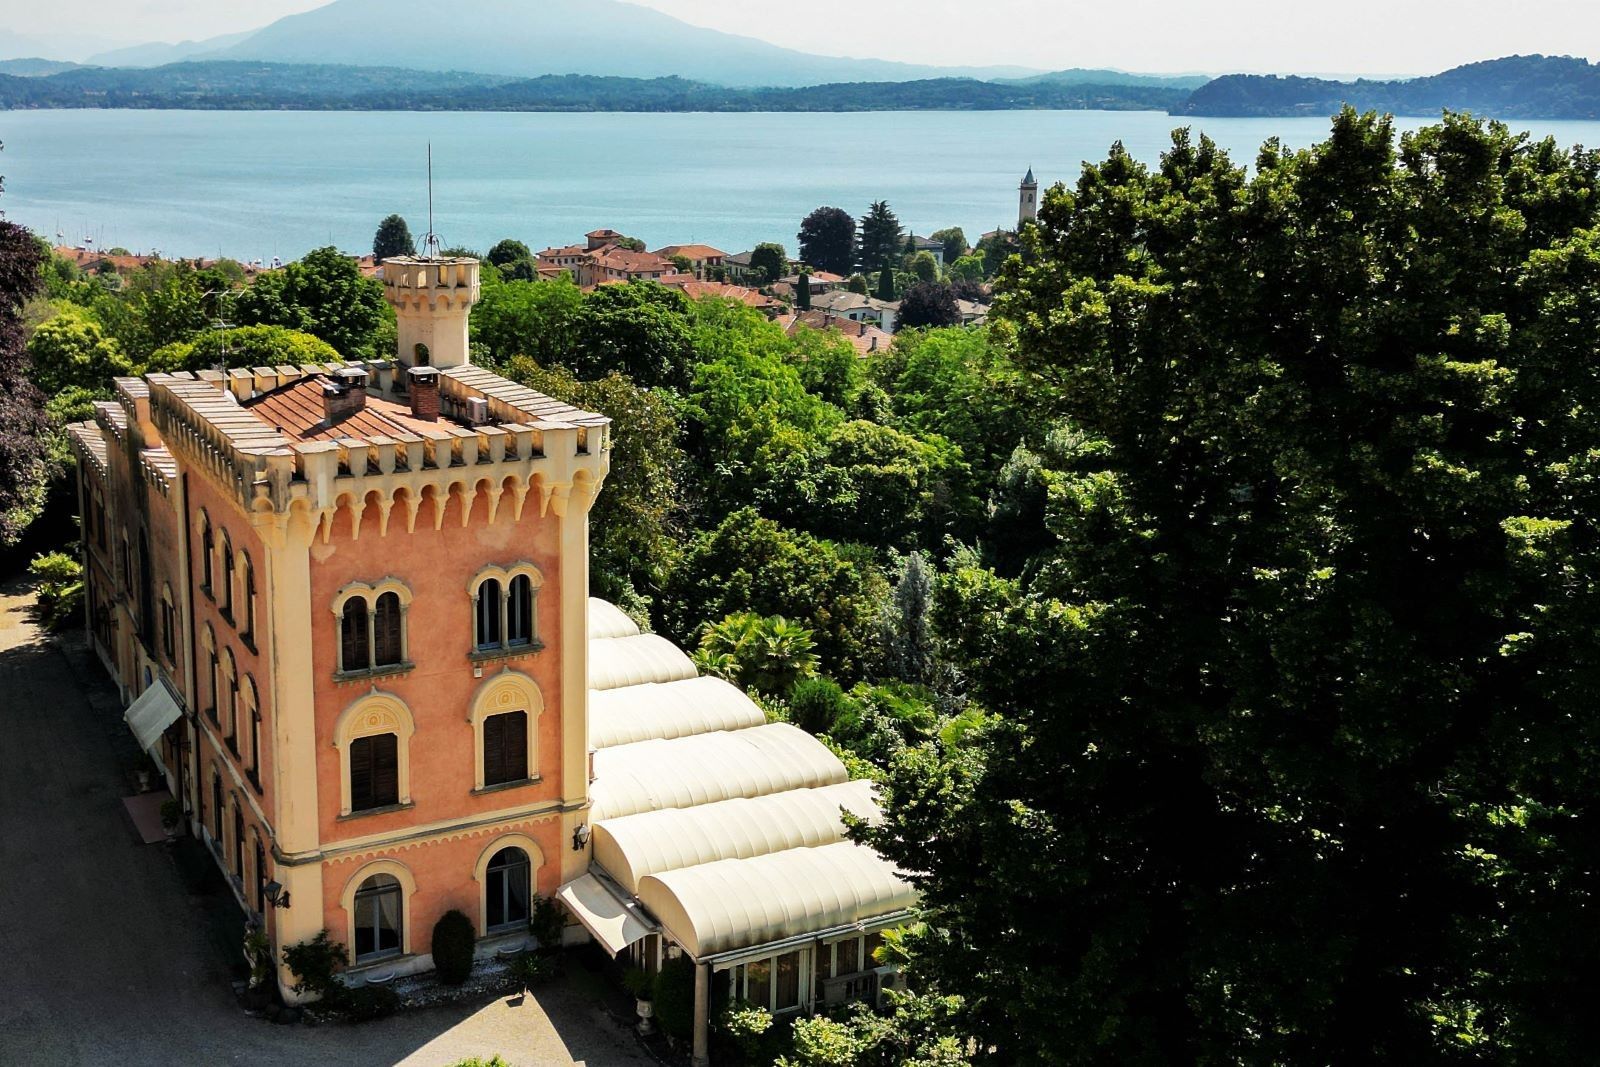 Photos Neo-Romanesque castle in Lesa on Lake Maggiore